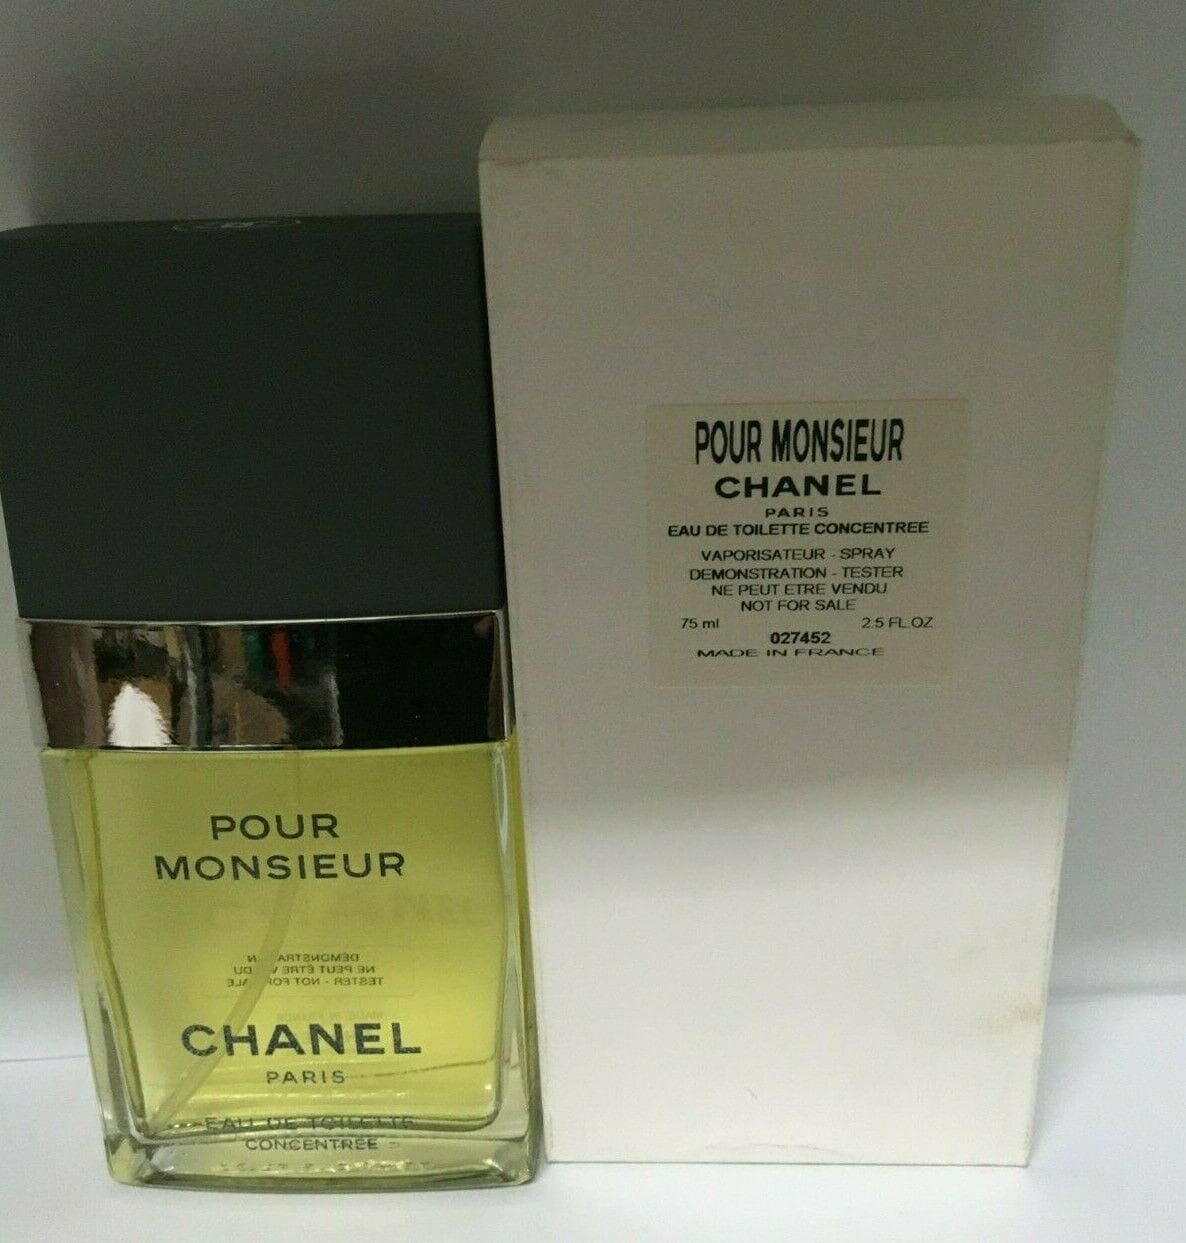 Chanel Pour Monsieur Eau De Toilette Concentree 2.5 Oz Spray -  Denmark